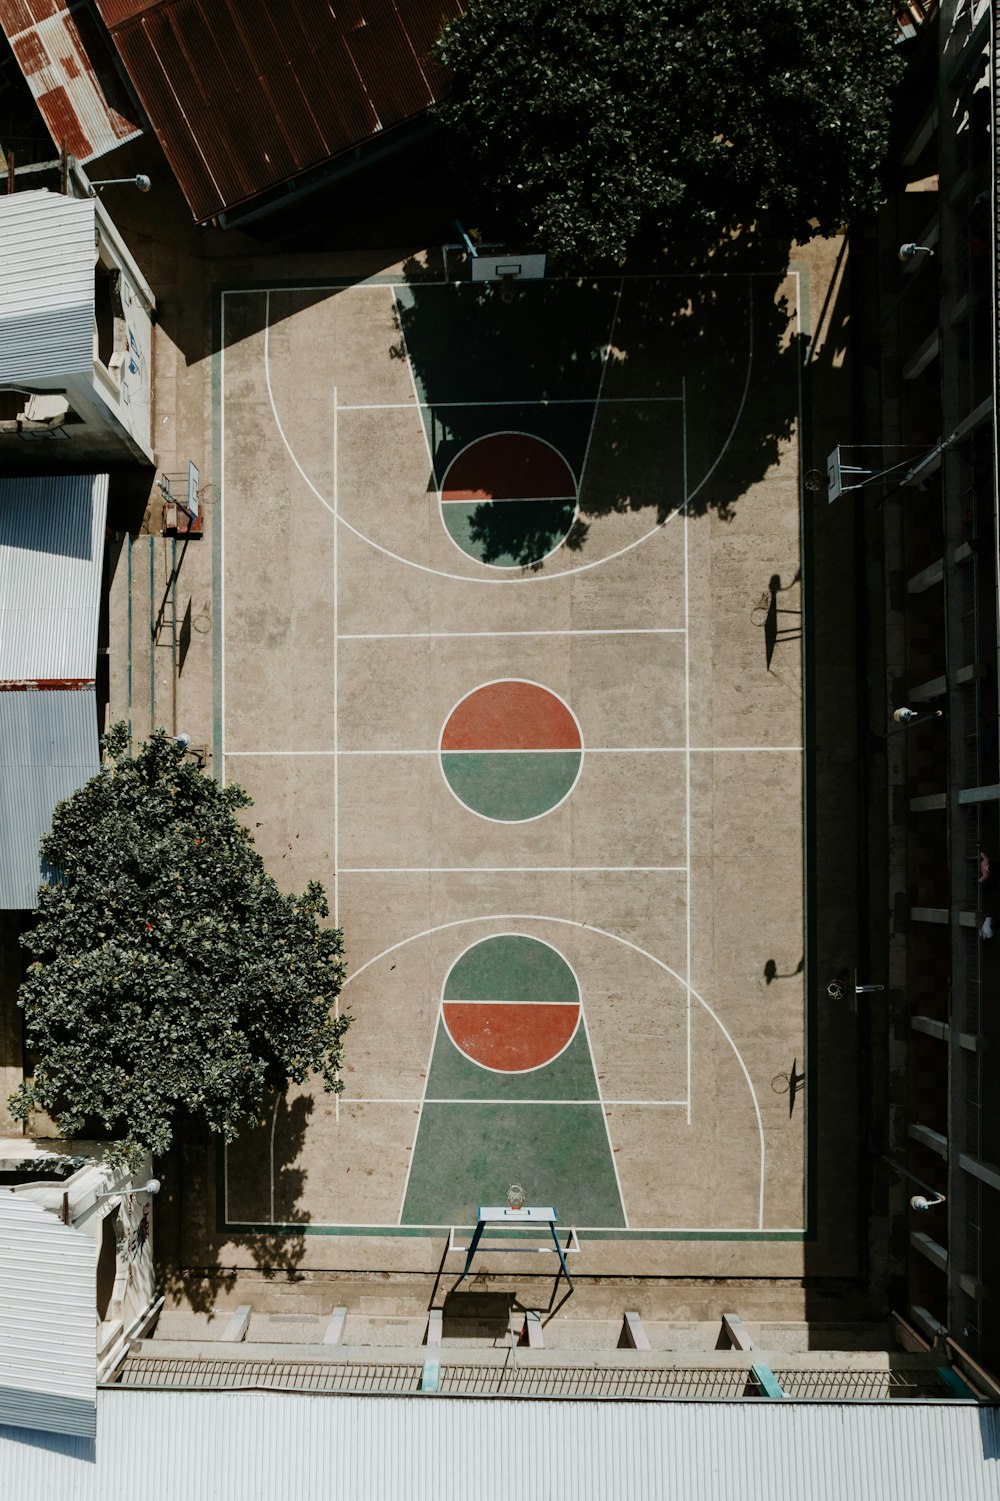 Blick von oben auf einen Basketballplatz mit einem Baum